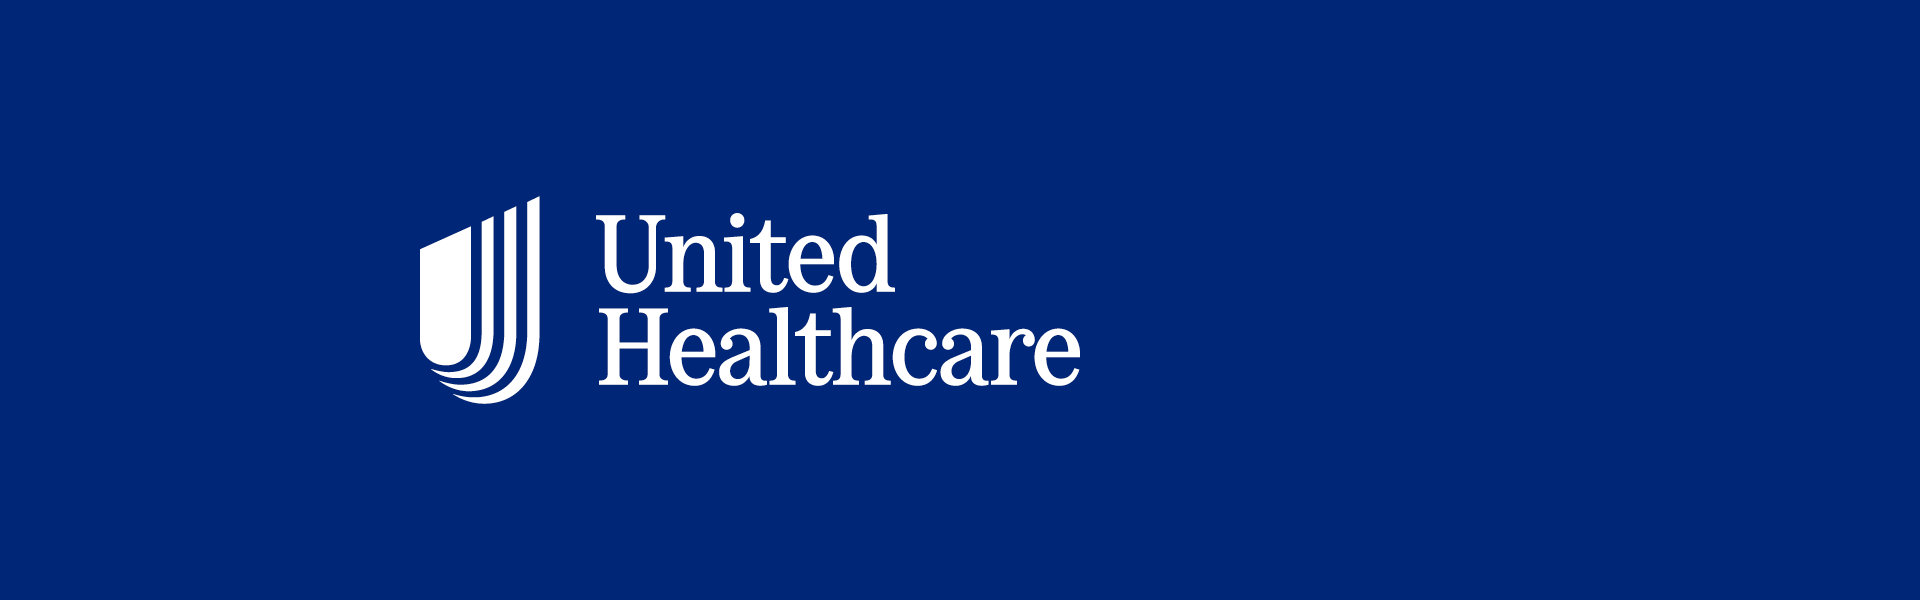 unitedhealthcare